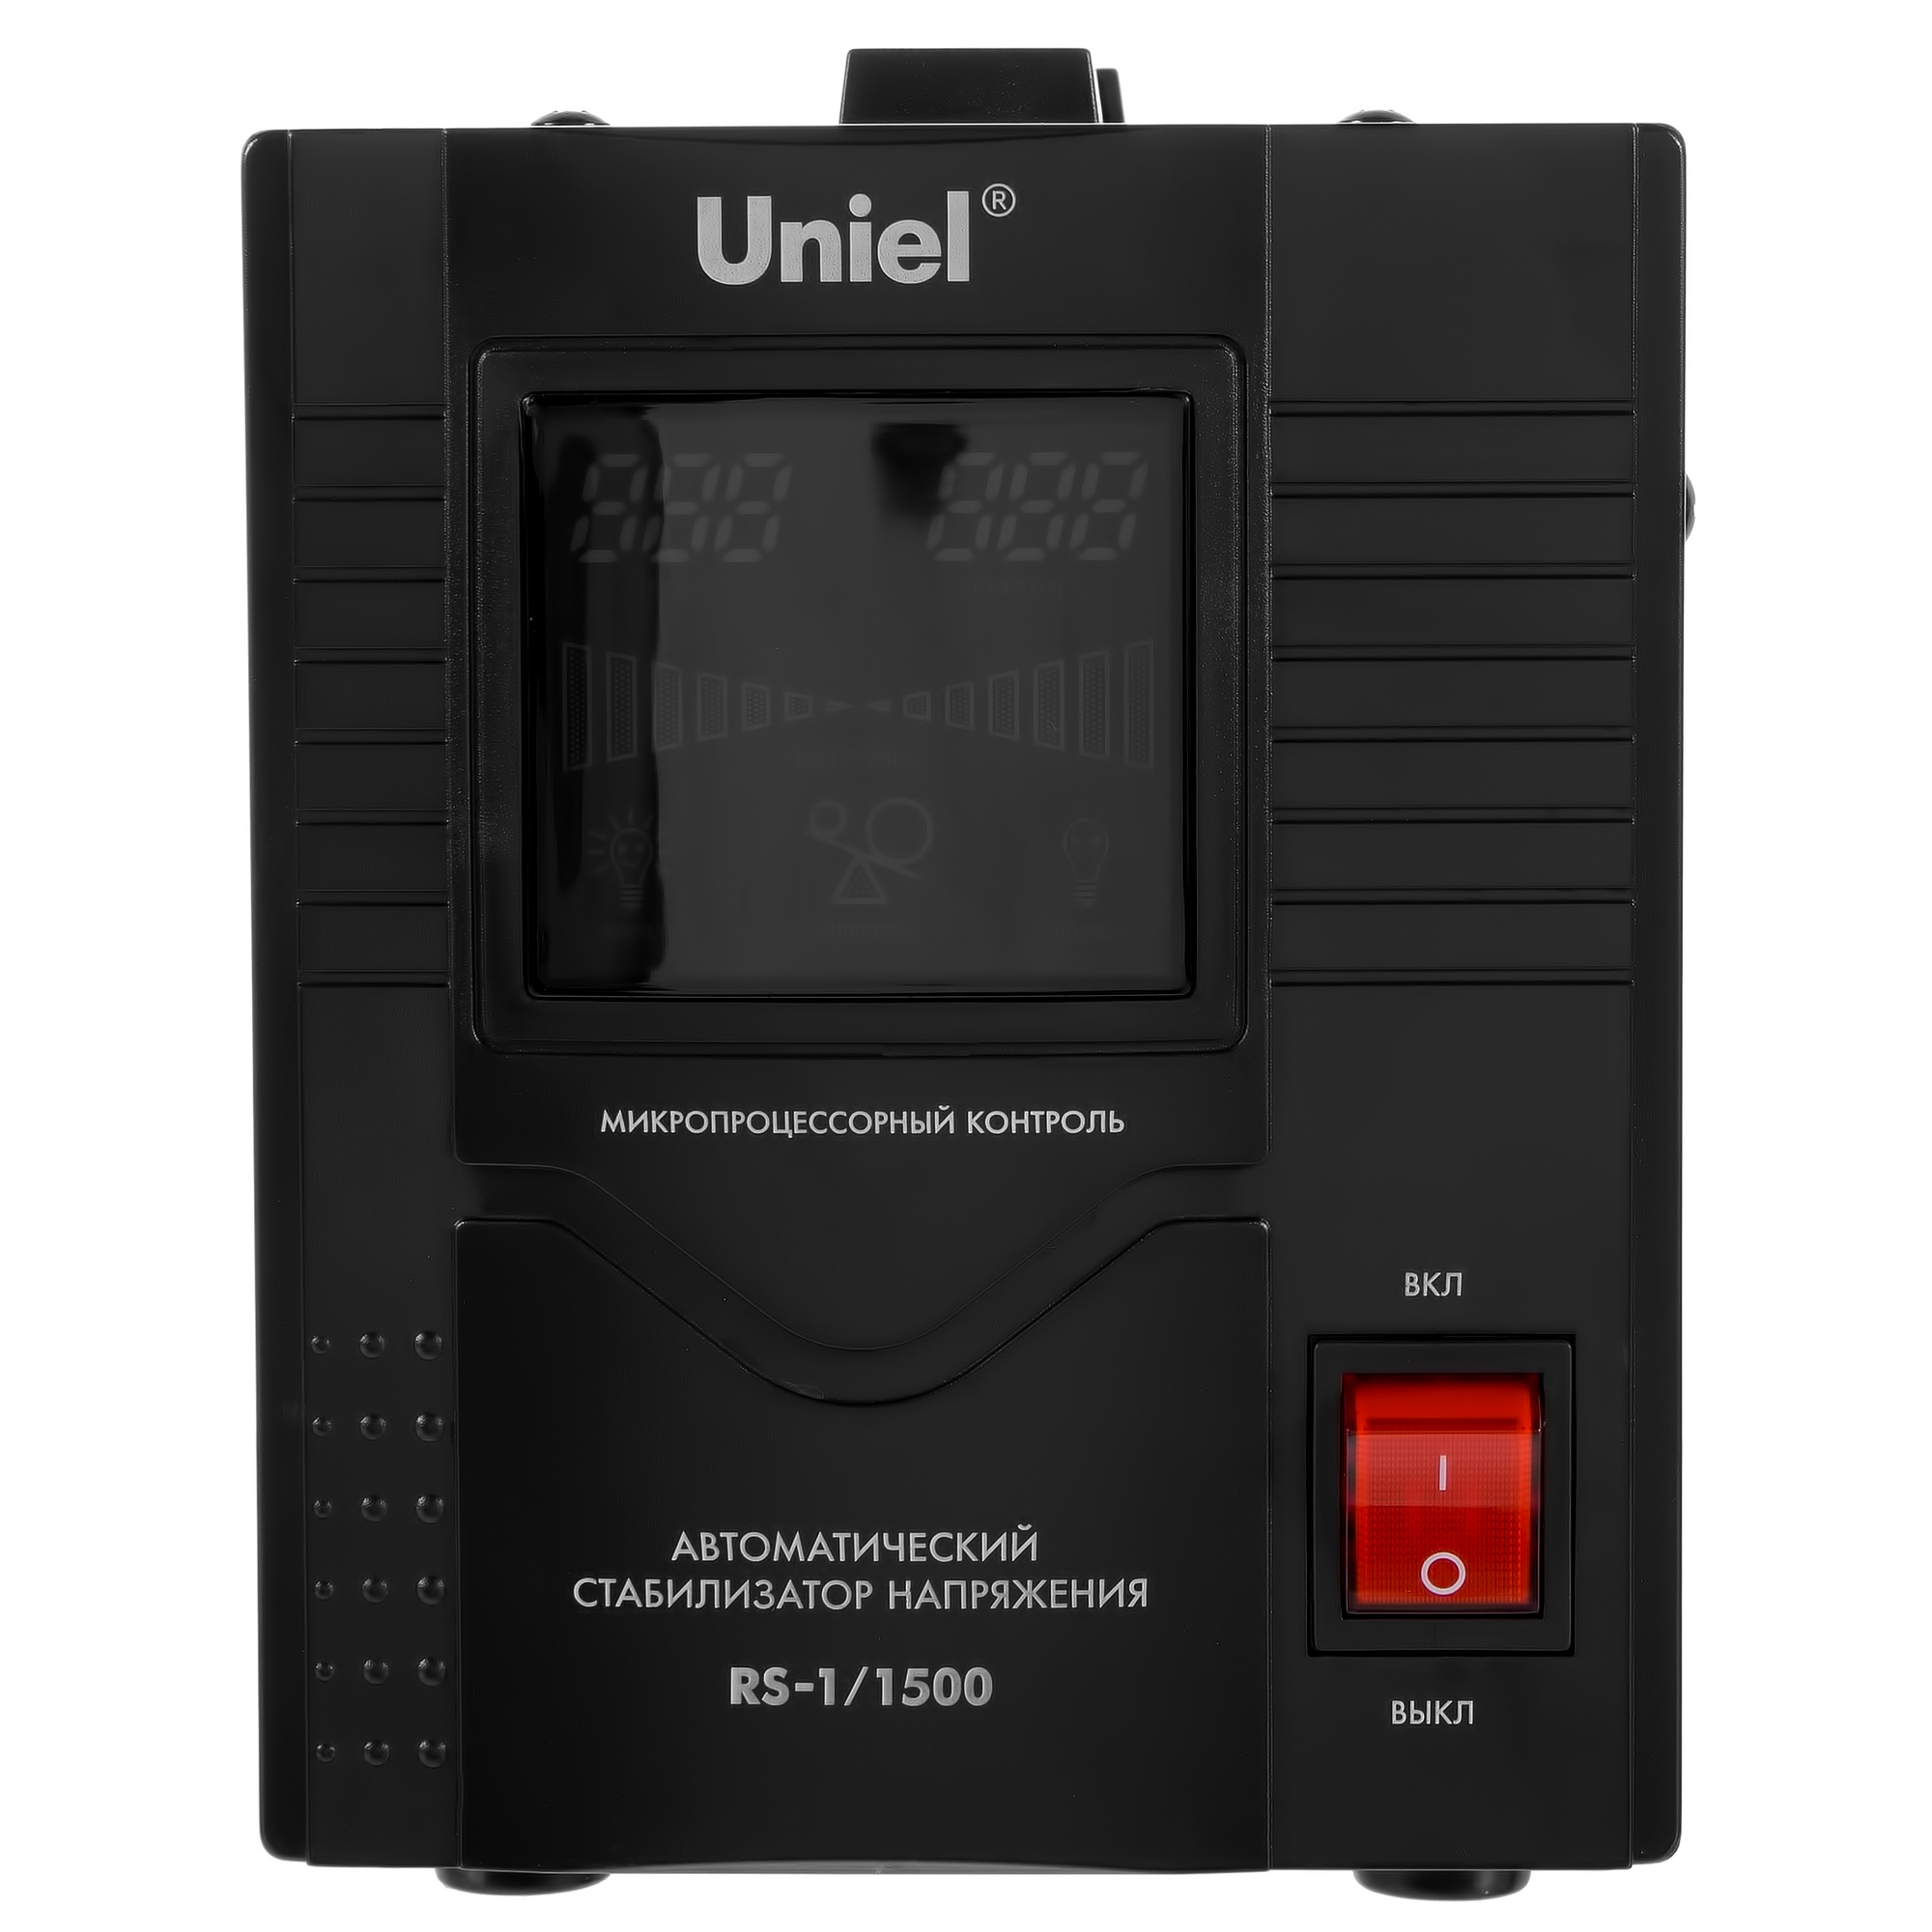  напряжения Uniel RS-1/1500 по цене 3120 ₽/шт.  в .